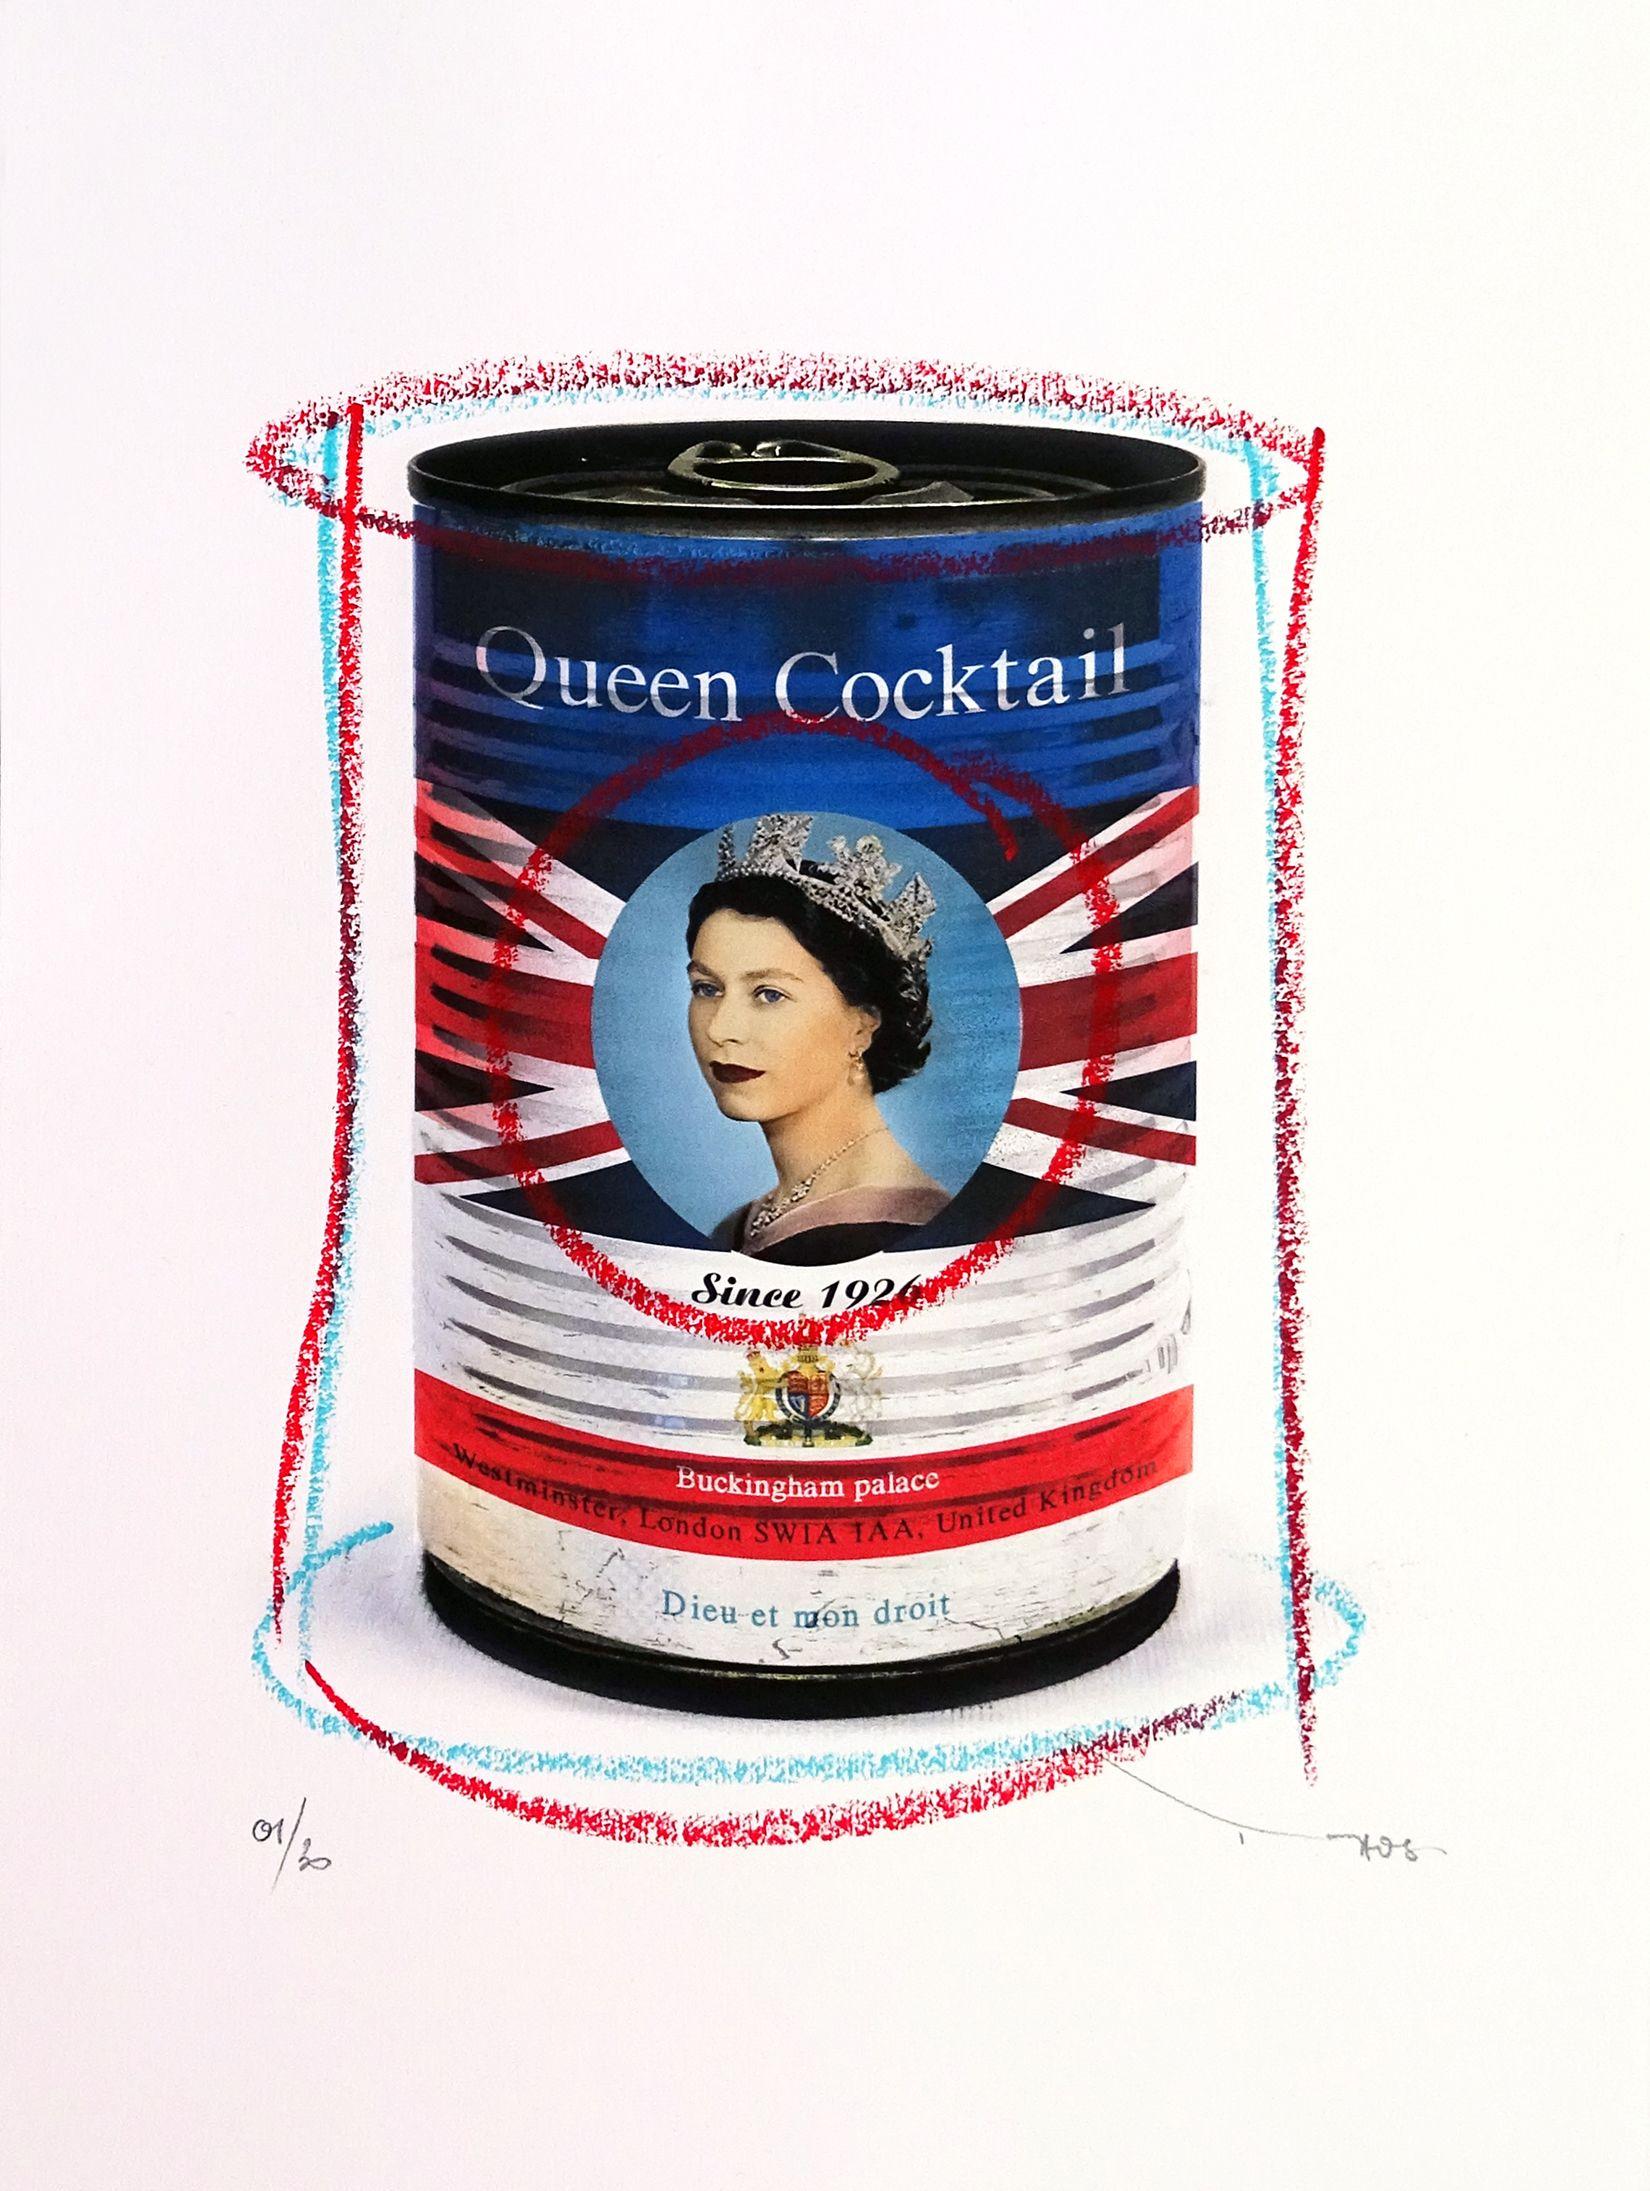 Tehos – Königin-Cocktail, Mischtechnik auf Papier – Mixed Media Art von Tehos Frederic Camilleri